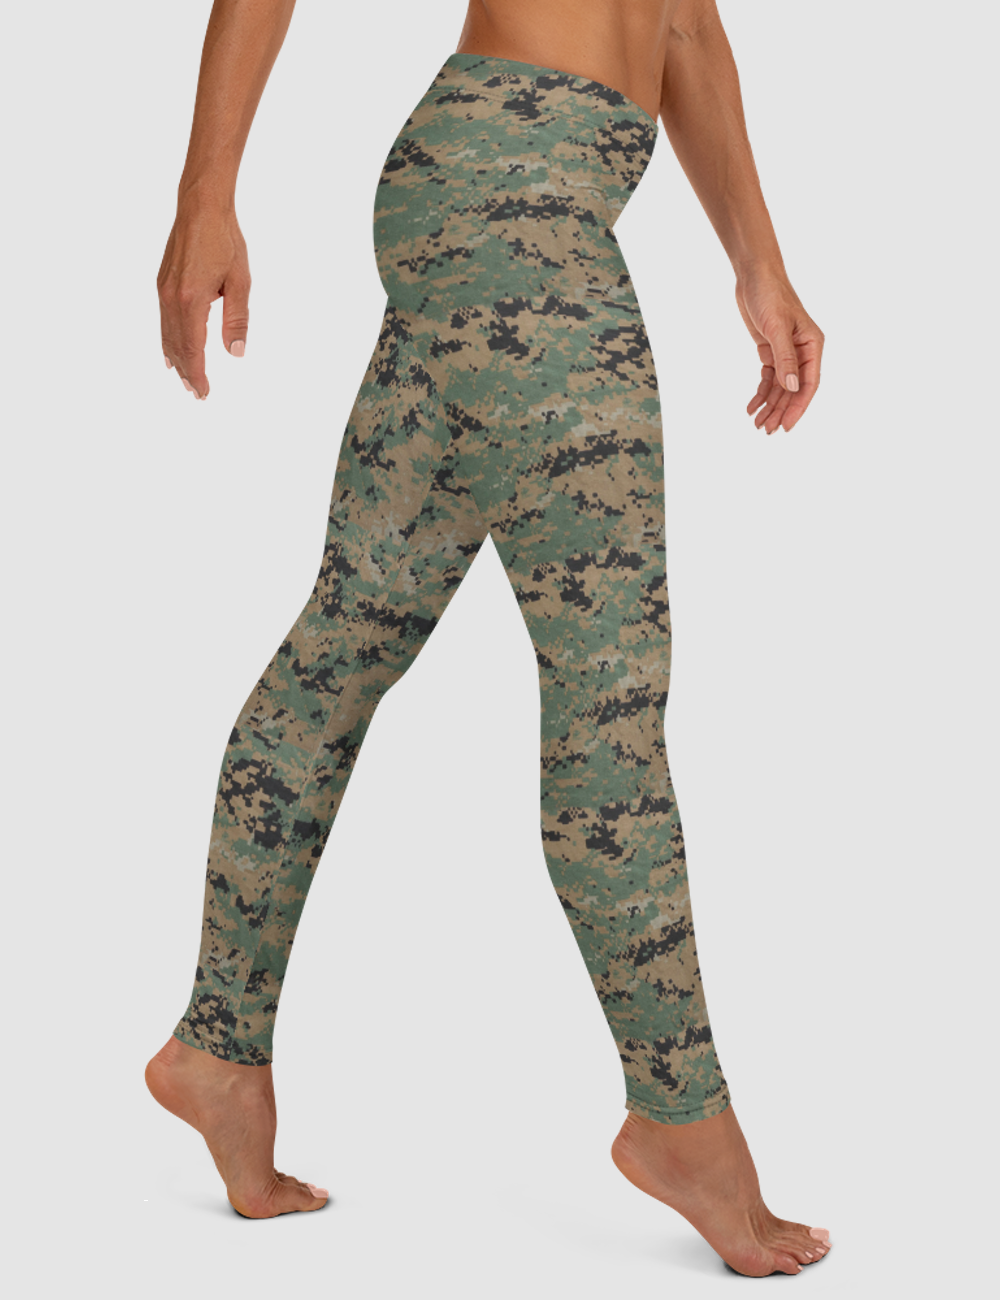 MARPAT Digital Woodland Camouflage Print | Women's Standard Yoga Leggings OniTakai